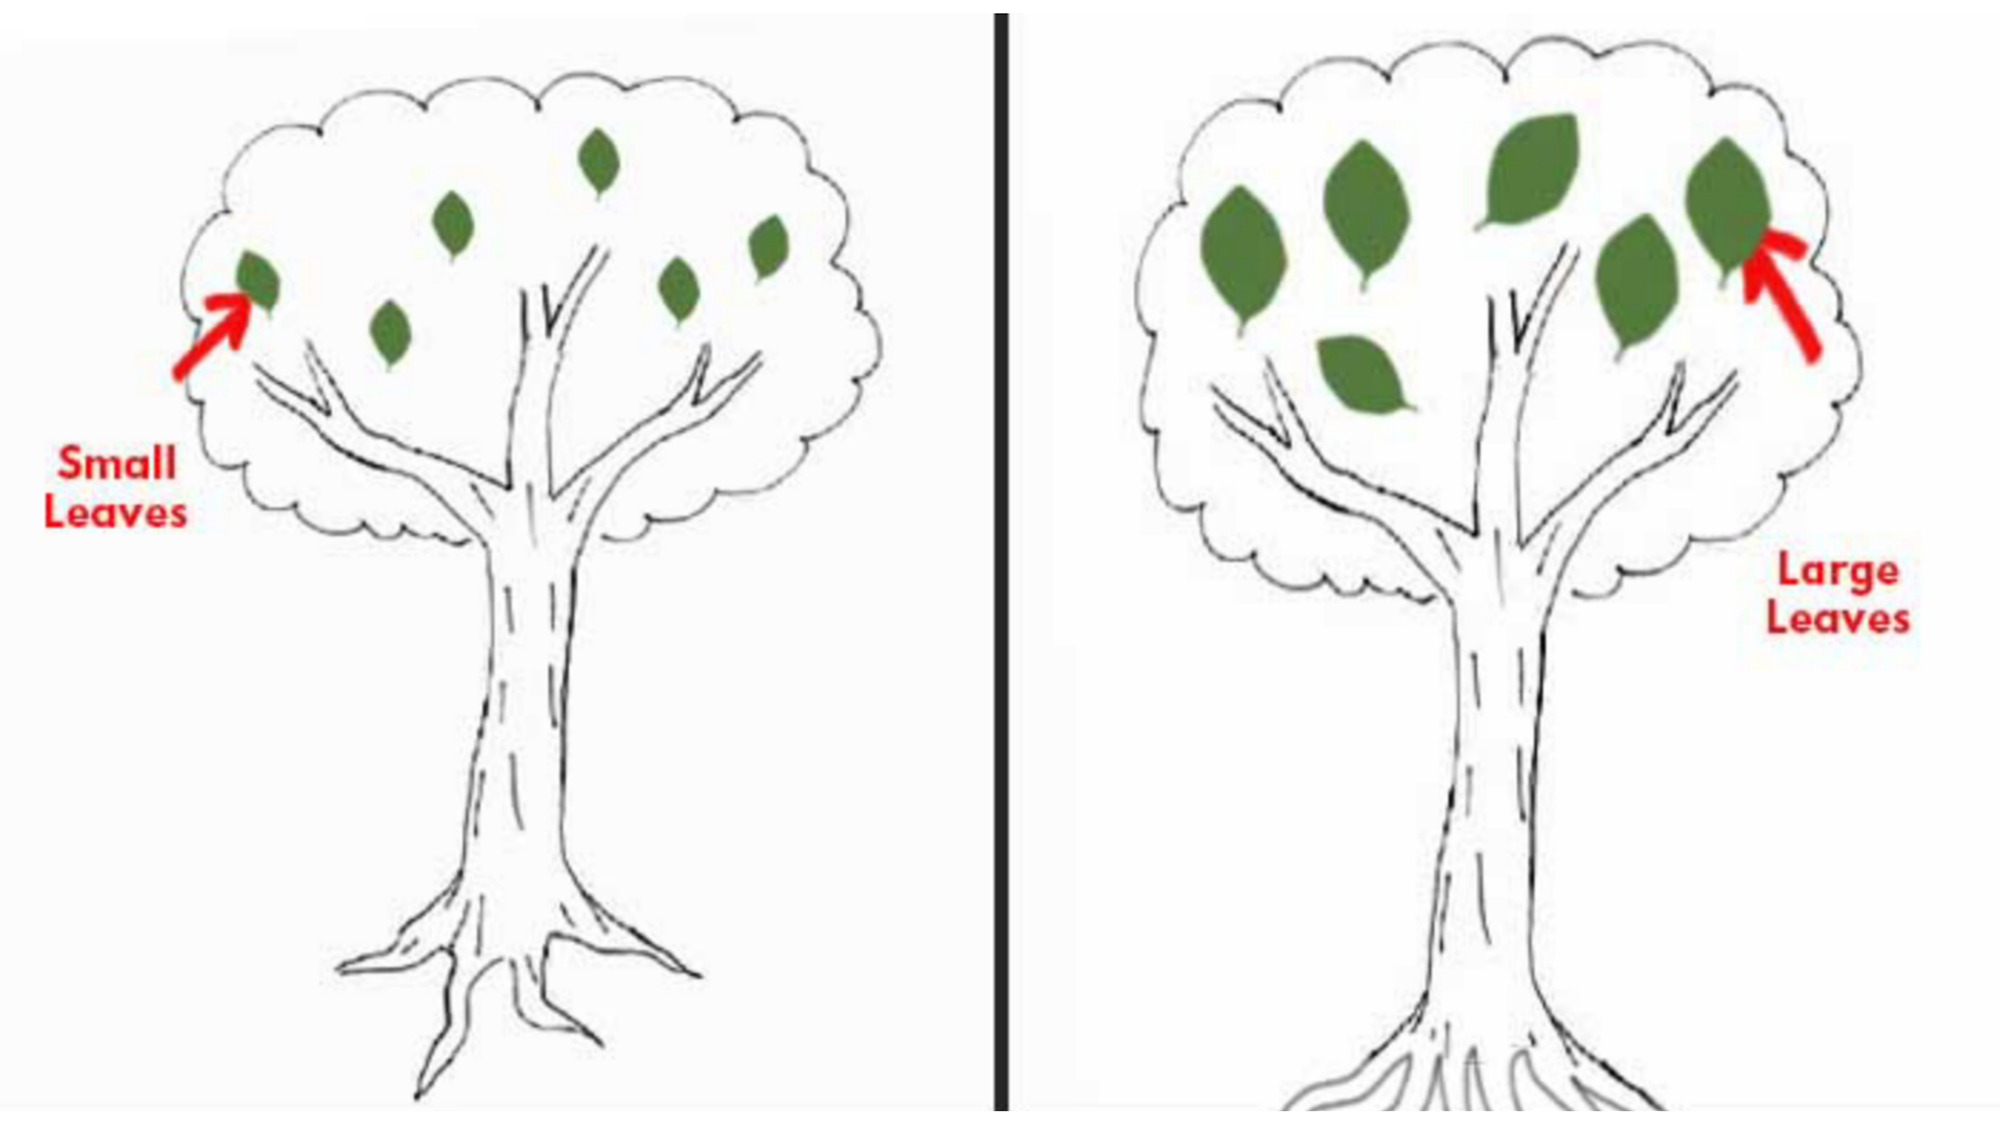 Cách vẽ cây sẽ giúp bạn thể hiện cảm xúc của mình một cách sinh động. Cùng chiêm ngưỡng những bức tranh đẹp và học hỏi những kỹ thuật vẽ cây dễ dàng để chuyển tải trọn vẹn những tâm trạng của bạn.